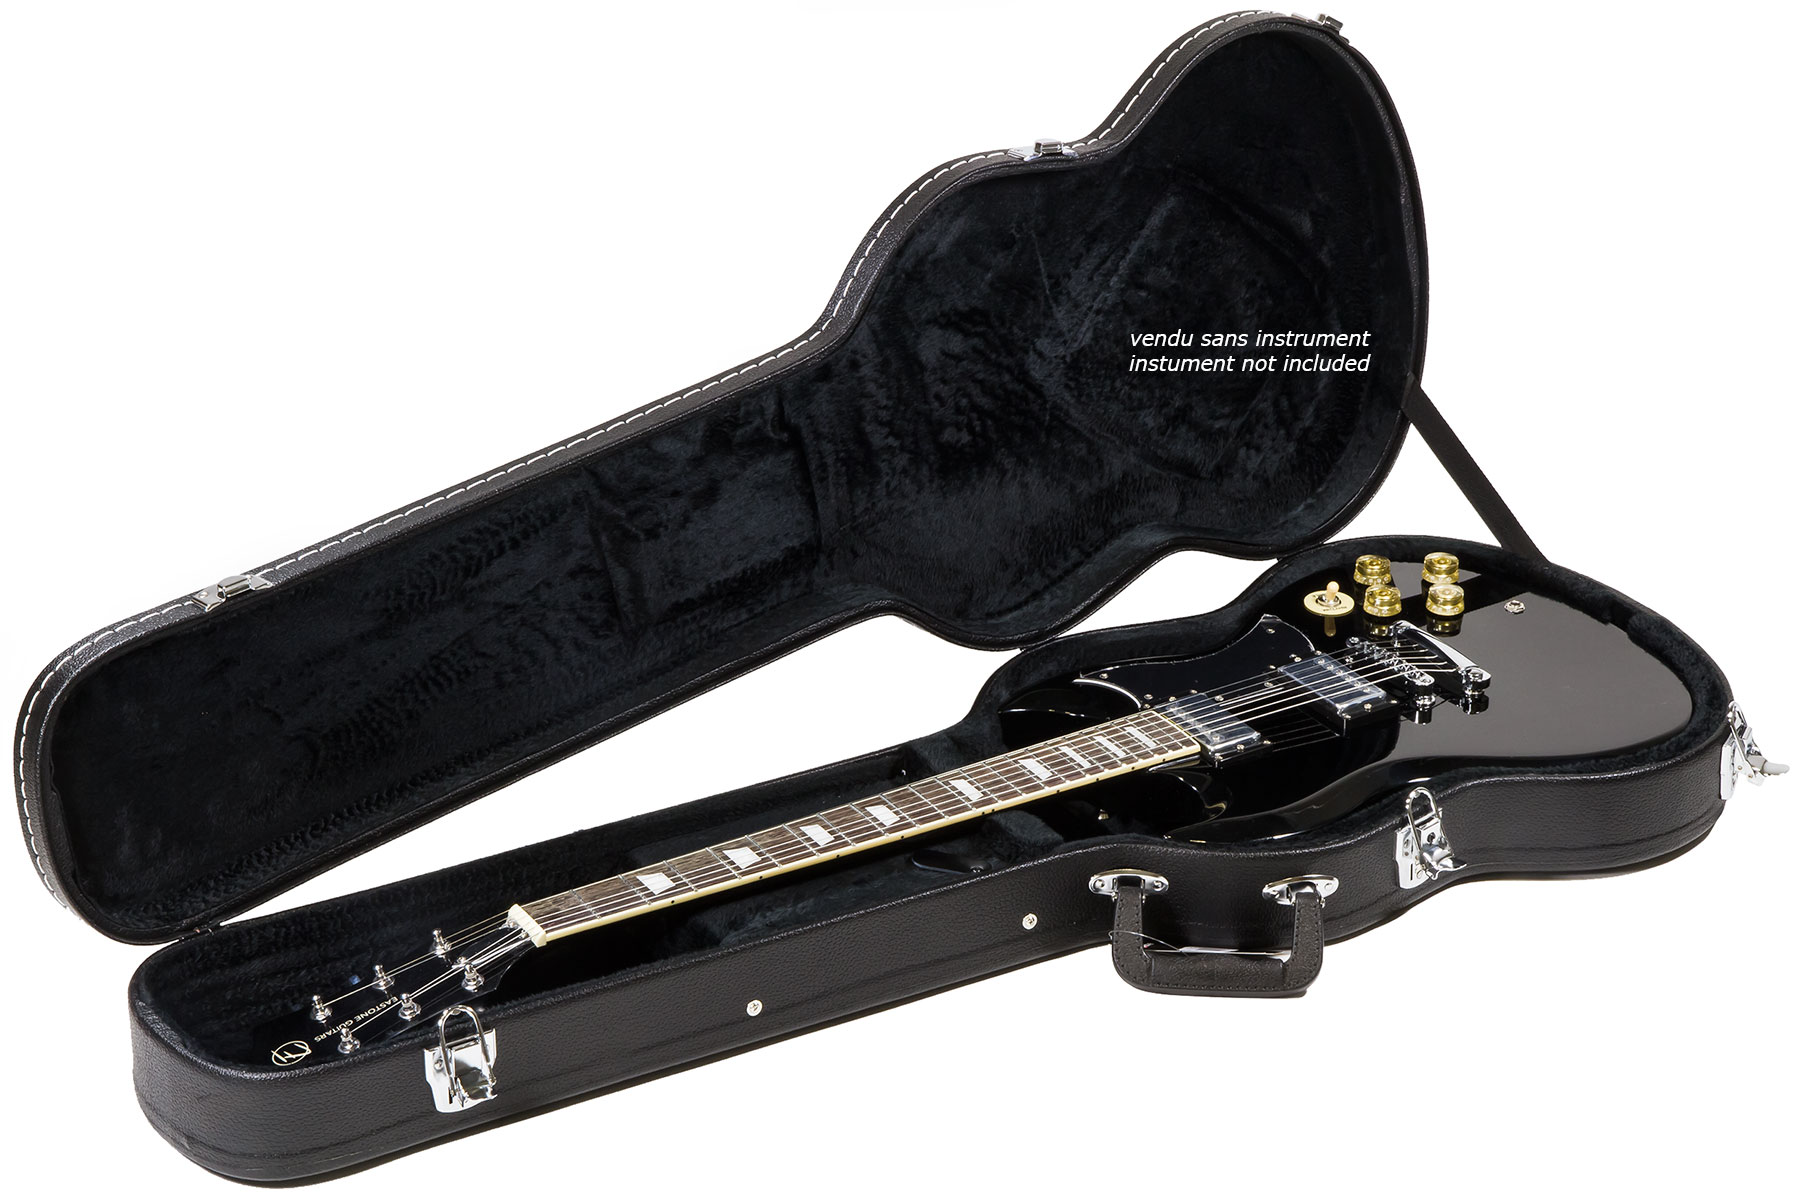 X-tone 1503 Standard Electrique Sg En Forme Black - Electric guitar case - Variation 2